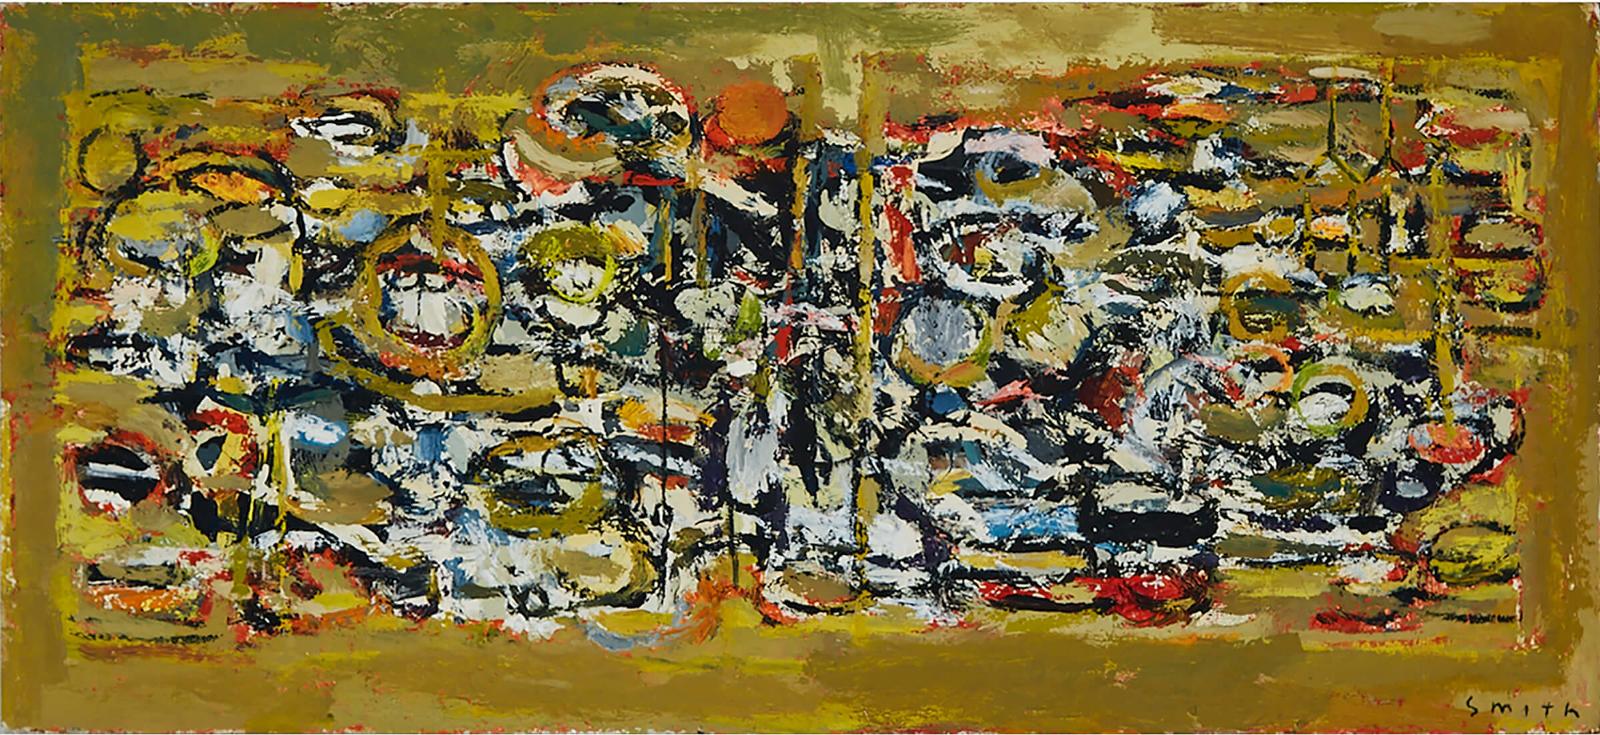 Gordon Applebee Smith (1919-2020) - Untitled - Abstract